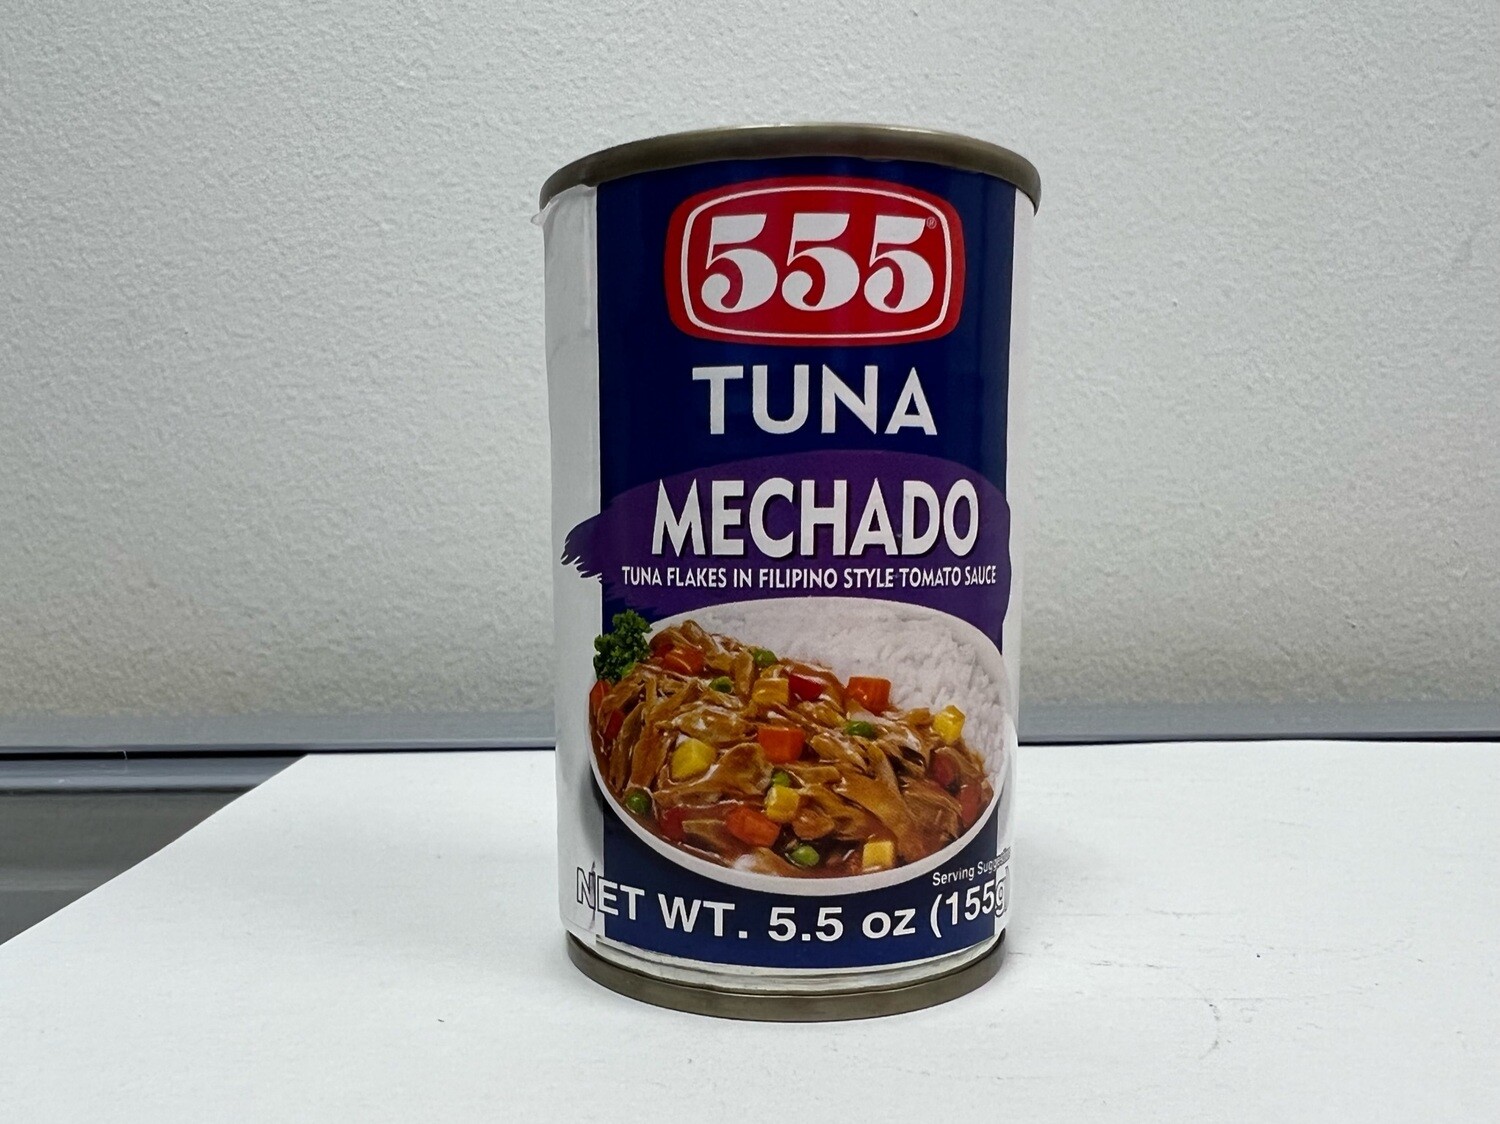 555 tuna mechado